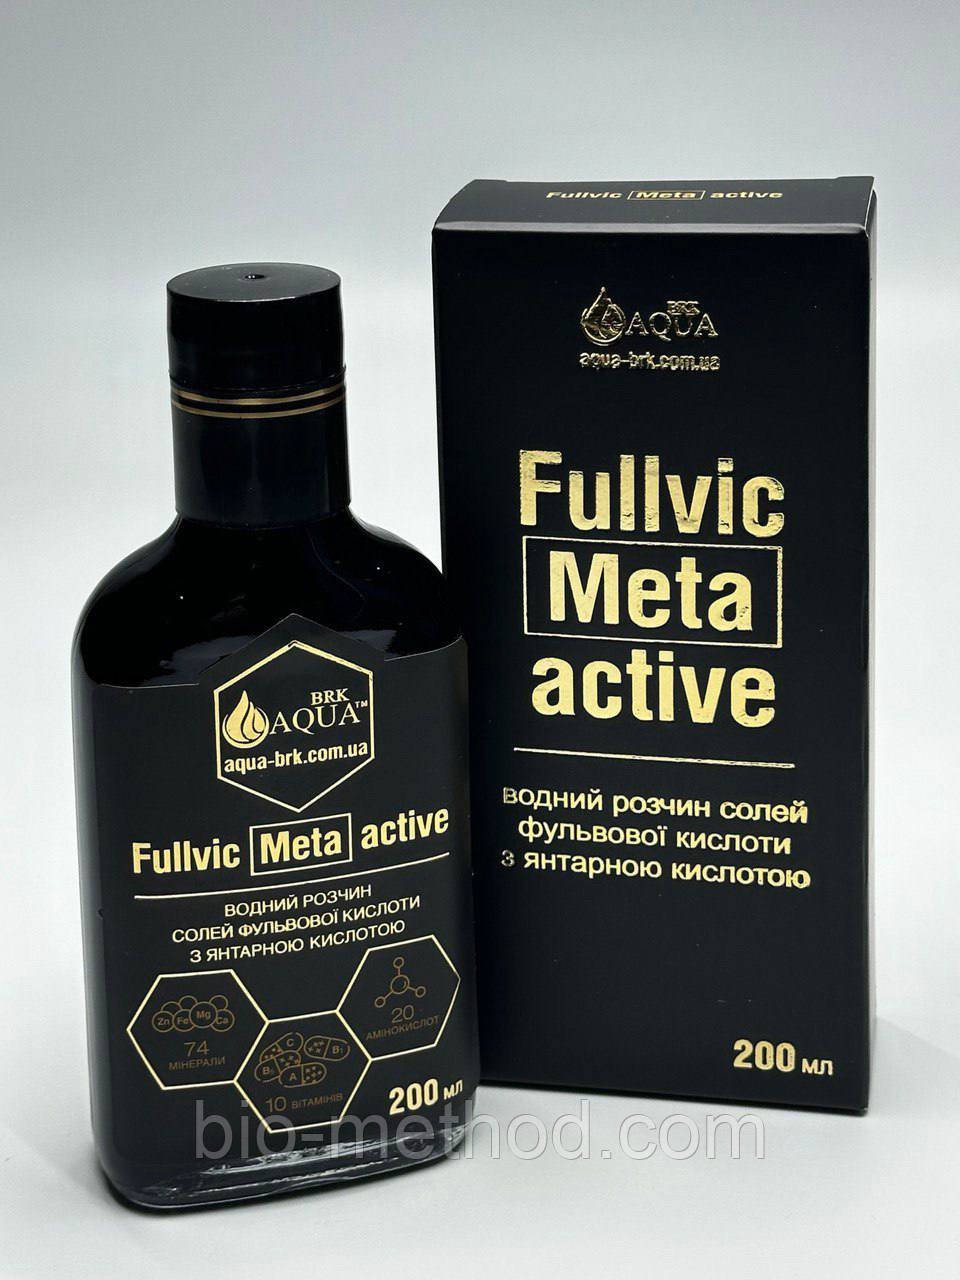 Фульва кислота Fullvic Meta active (250 мл скло)